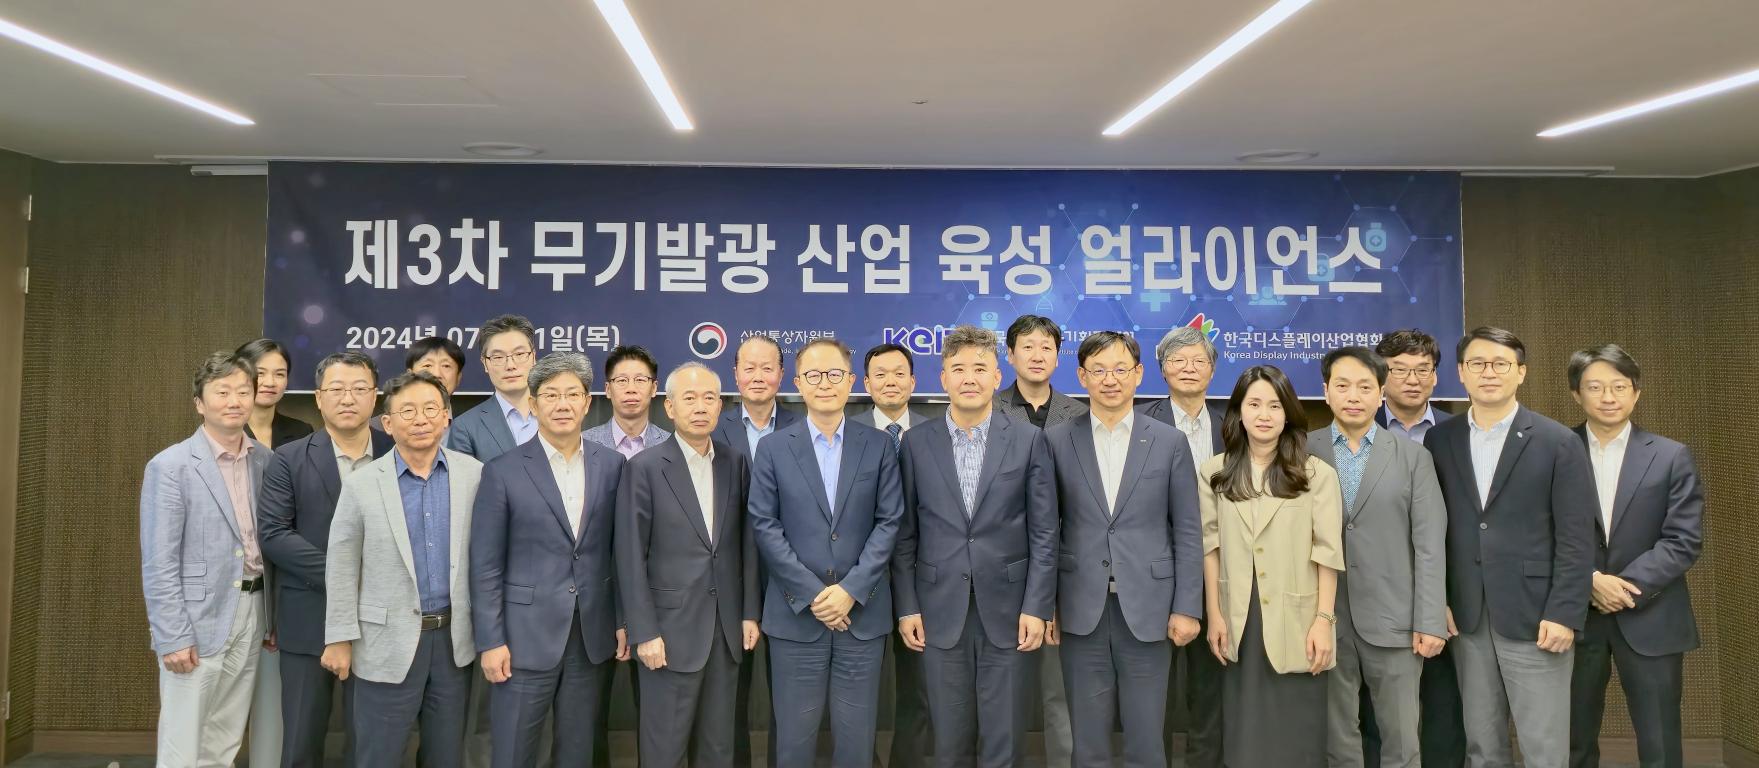 제3차 무기발광 산업육성 얼라이언스 개최